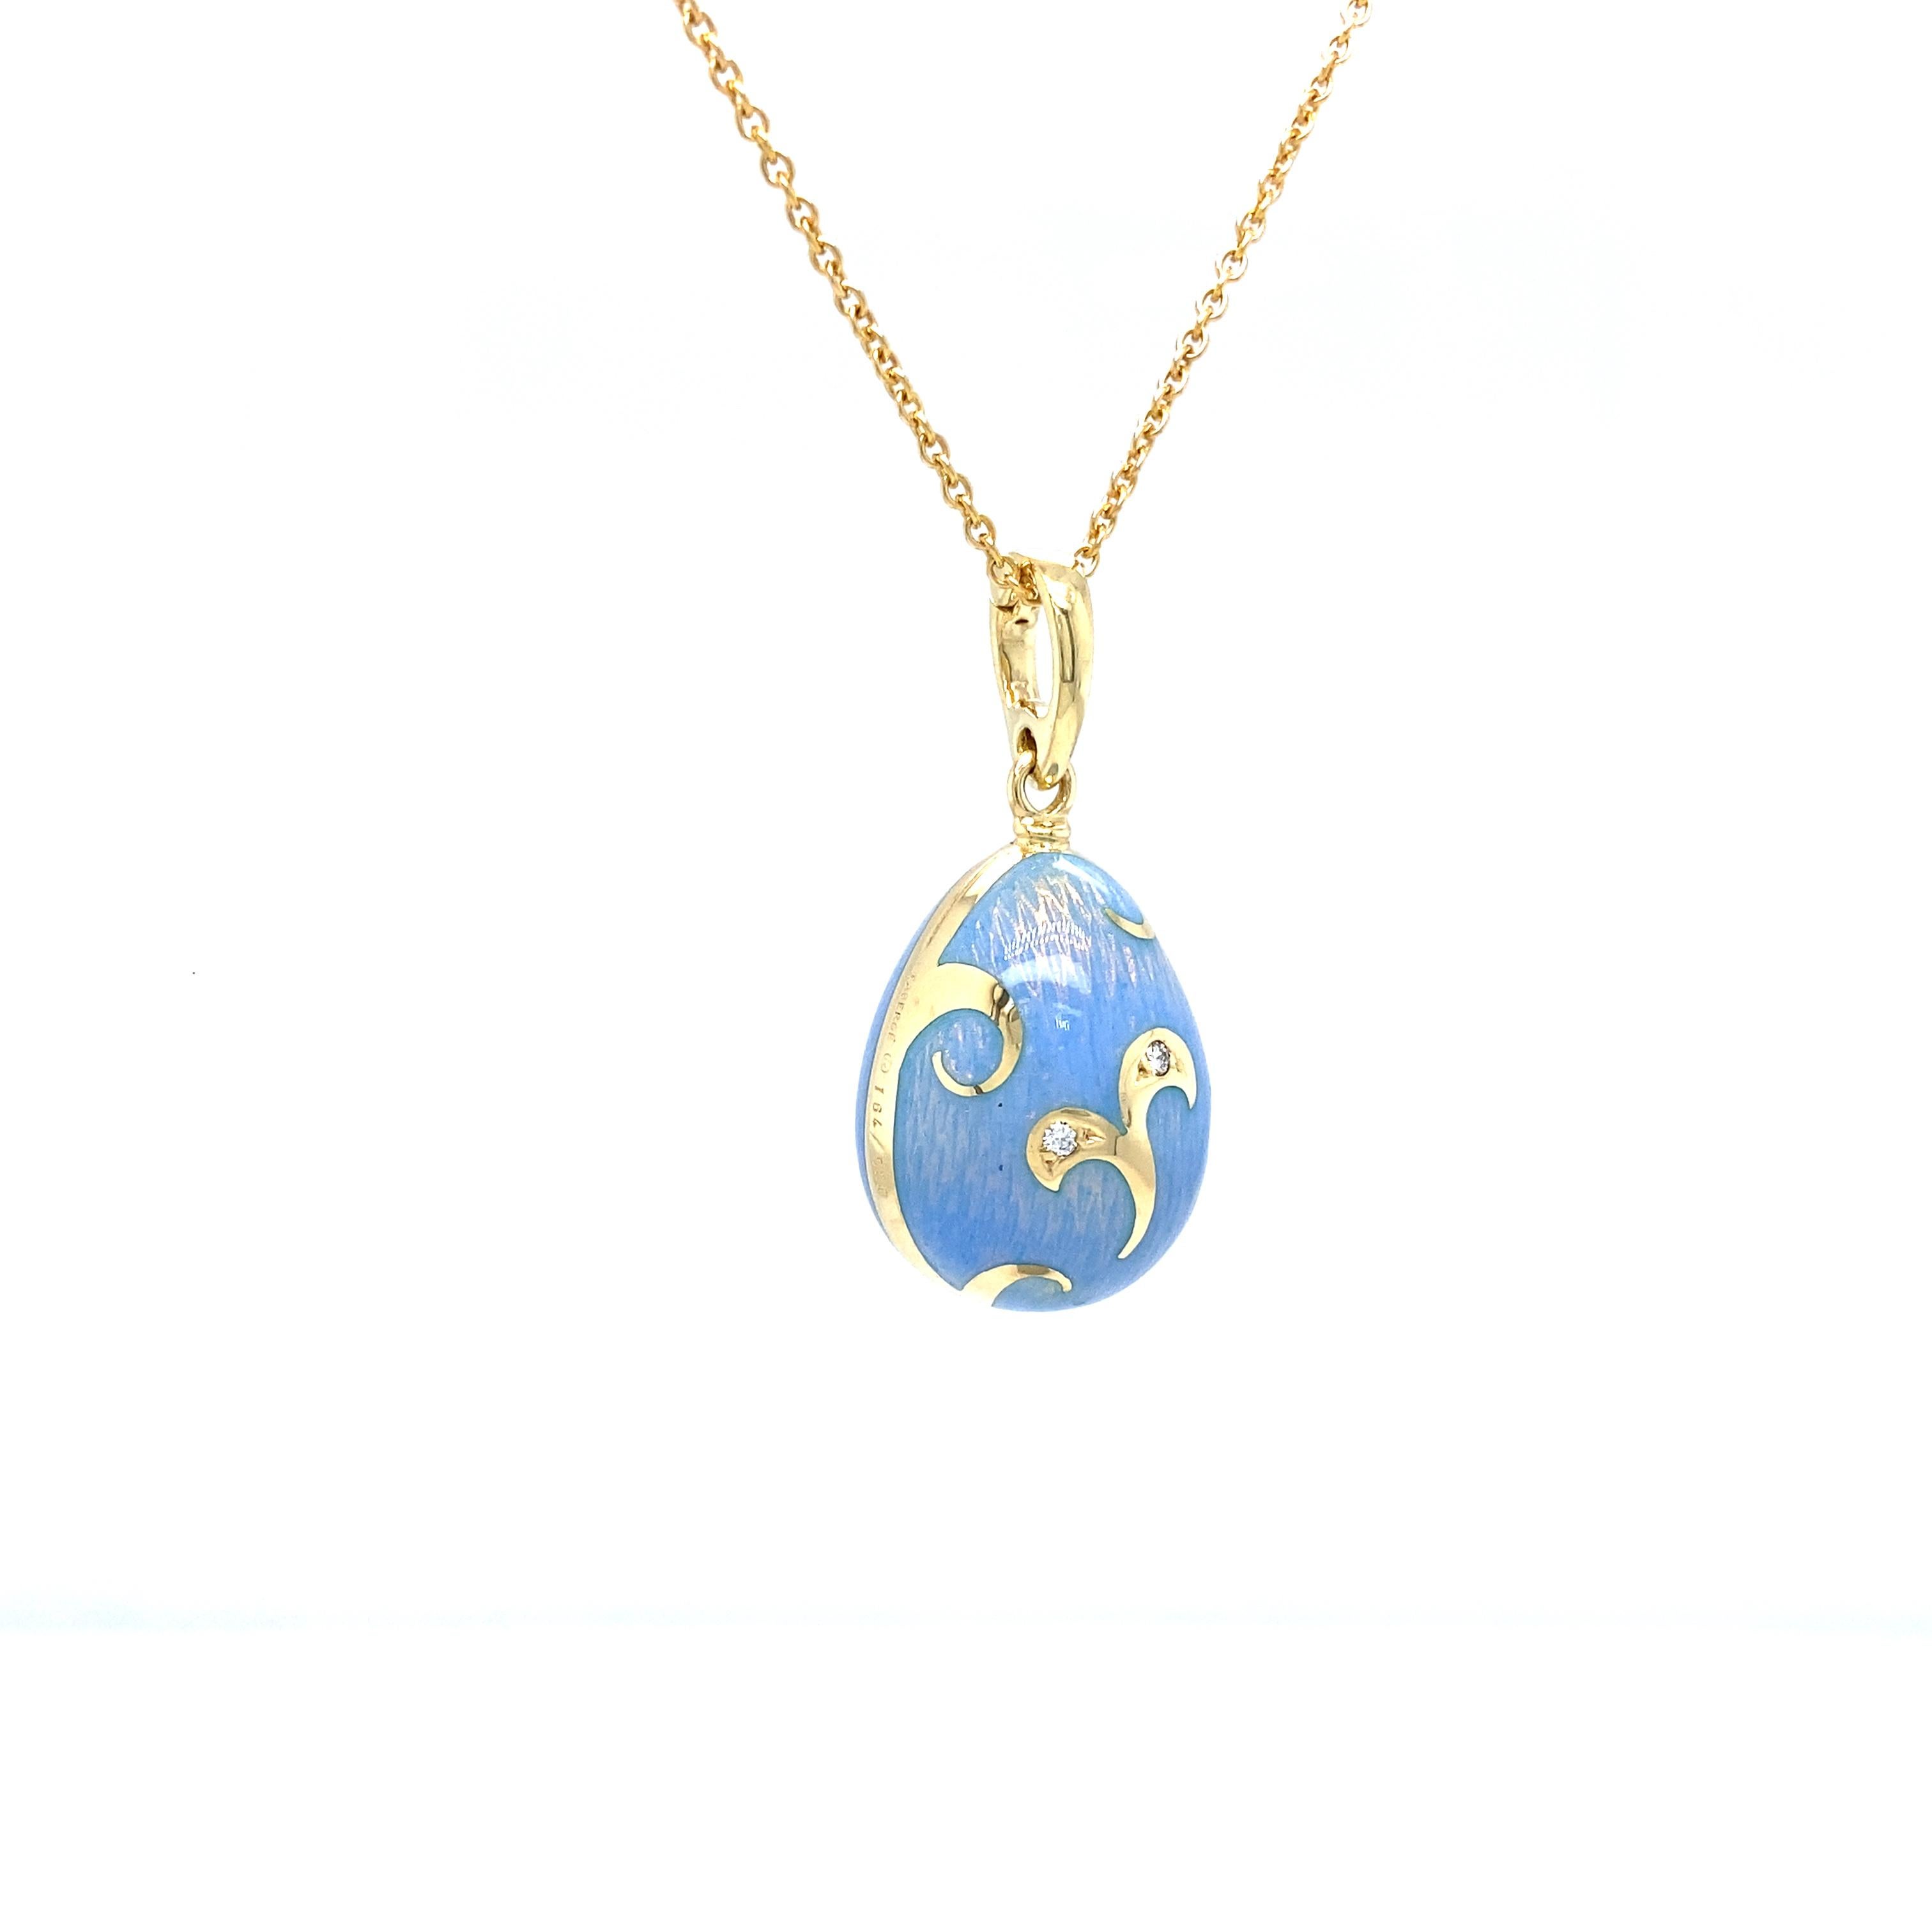 Collier pendentif œuf Fabergé, édition limitée, or jaune 18k, bleu opalescent translucide, 2 diamants taille brillant 0.02 ct G VS, 45 cm

Référence : F1793/OB/00/00/102
Marque : Fabergé
Maître d'œuvre : Victor Mayer
Inspiration du design : Rocaille